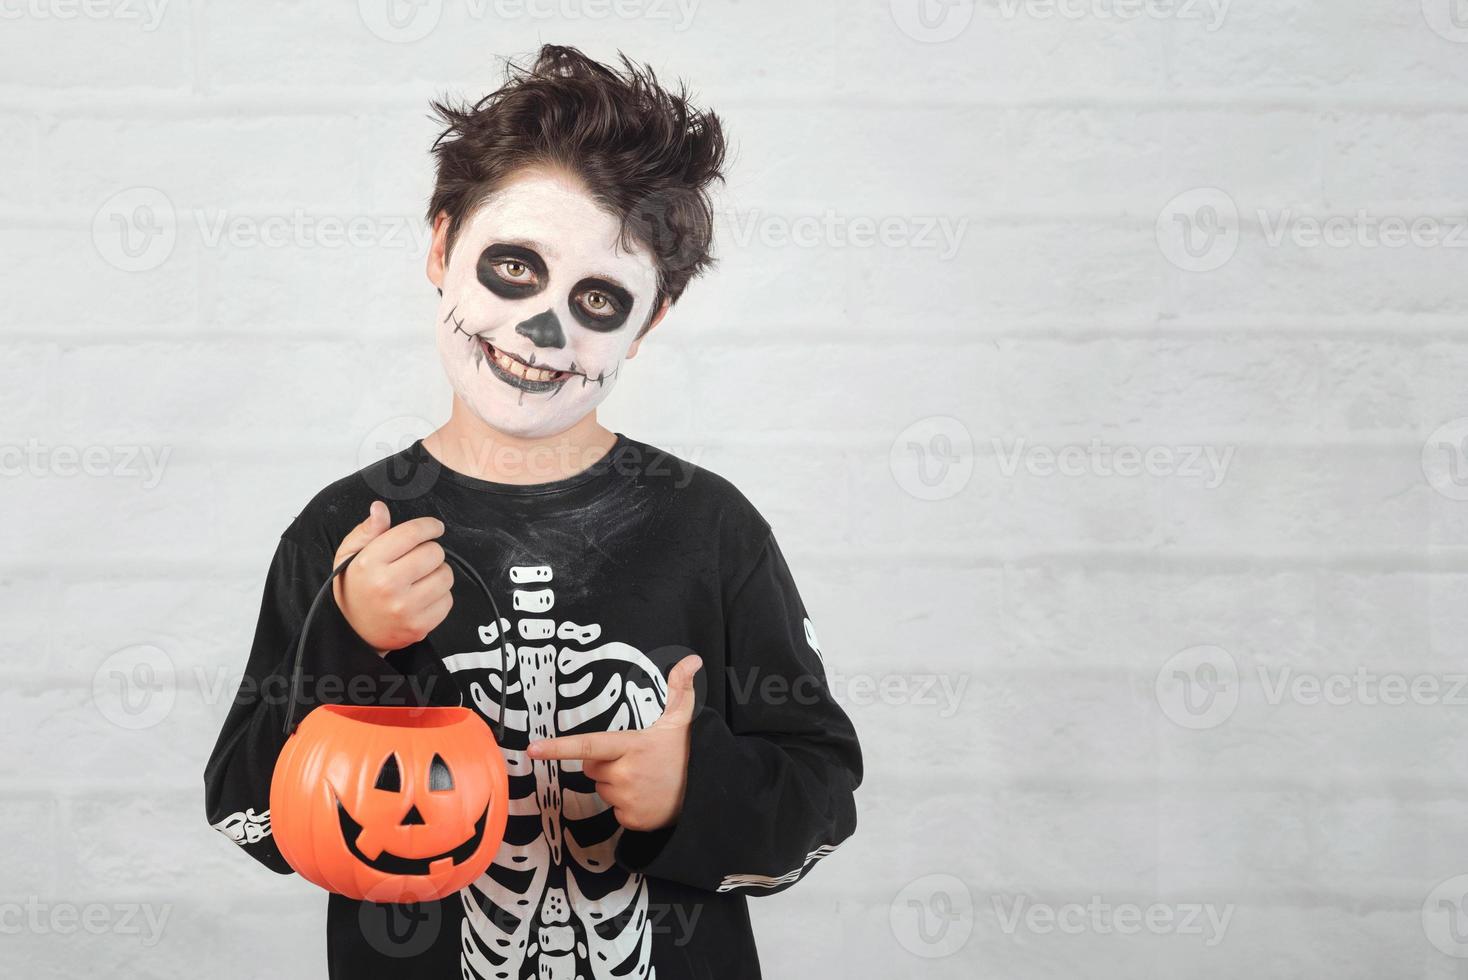 felice halloween.bambino divertente in un costume da scheletro con zucca di halloween foto